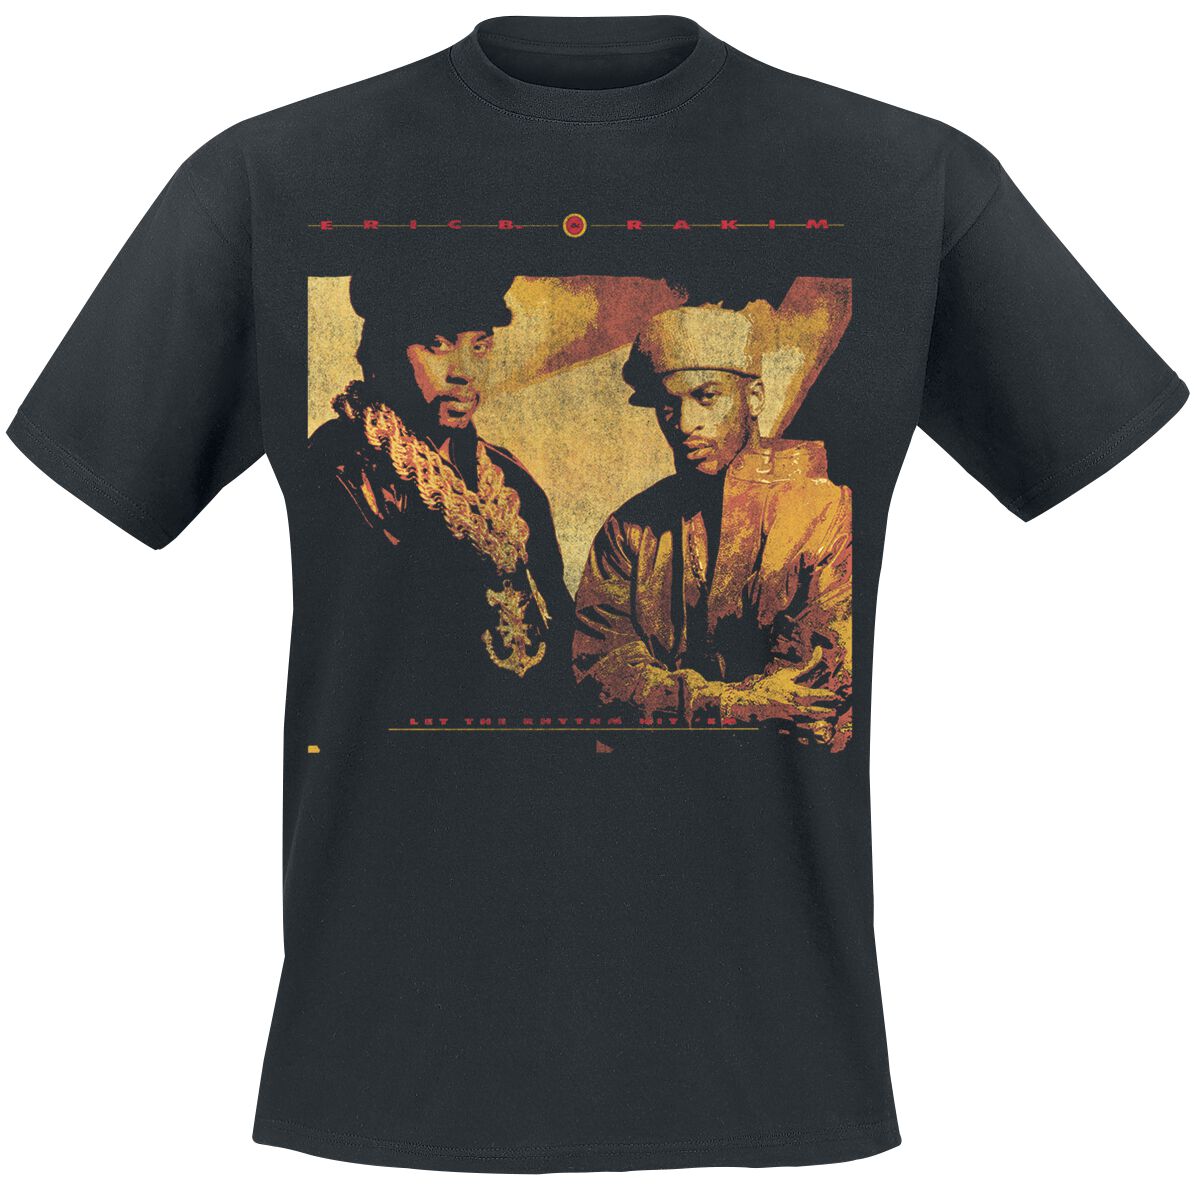 Eric B. & Rakim T-Shirt - Rhythm Hit Em - S bis 3XL - für Männer - Größe M - schwarz  - Lizenziertes Merchandise!